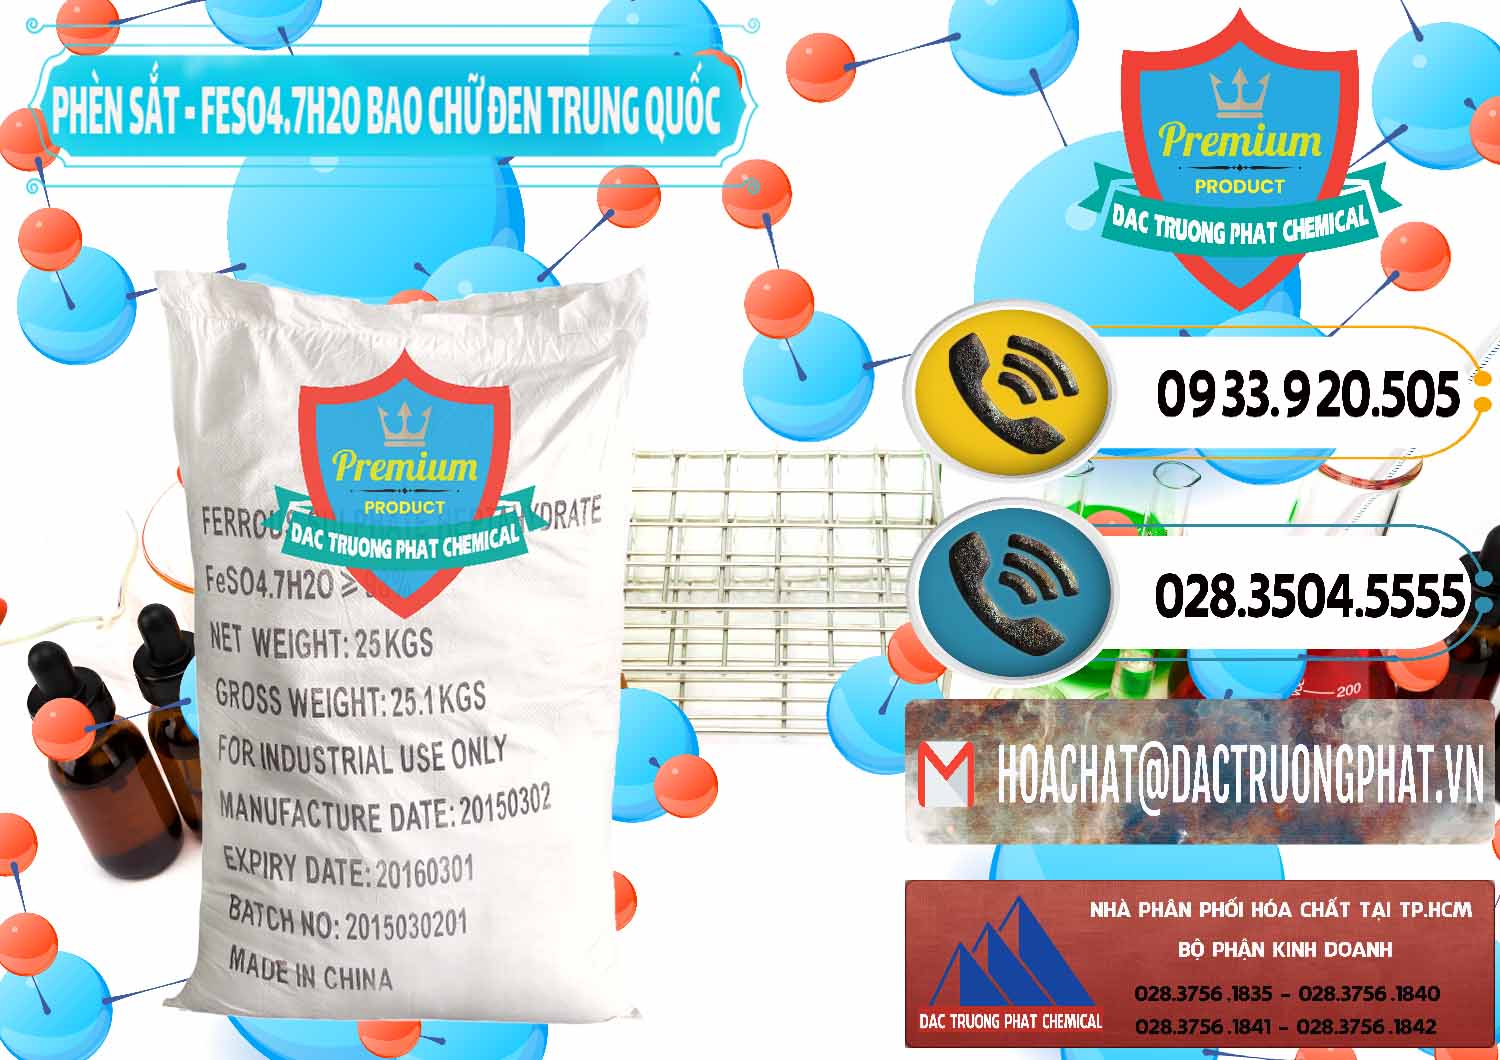 Cty phân phối và bán Phèn Sắt - FeSO4.7H2O Bao Chữ Đen Trung Quốc China - 0234 - Cung cấp & nhập khẩu hóa chất tại TP.HCM - hoachatdetnhuom.vn